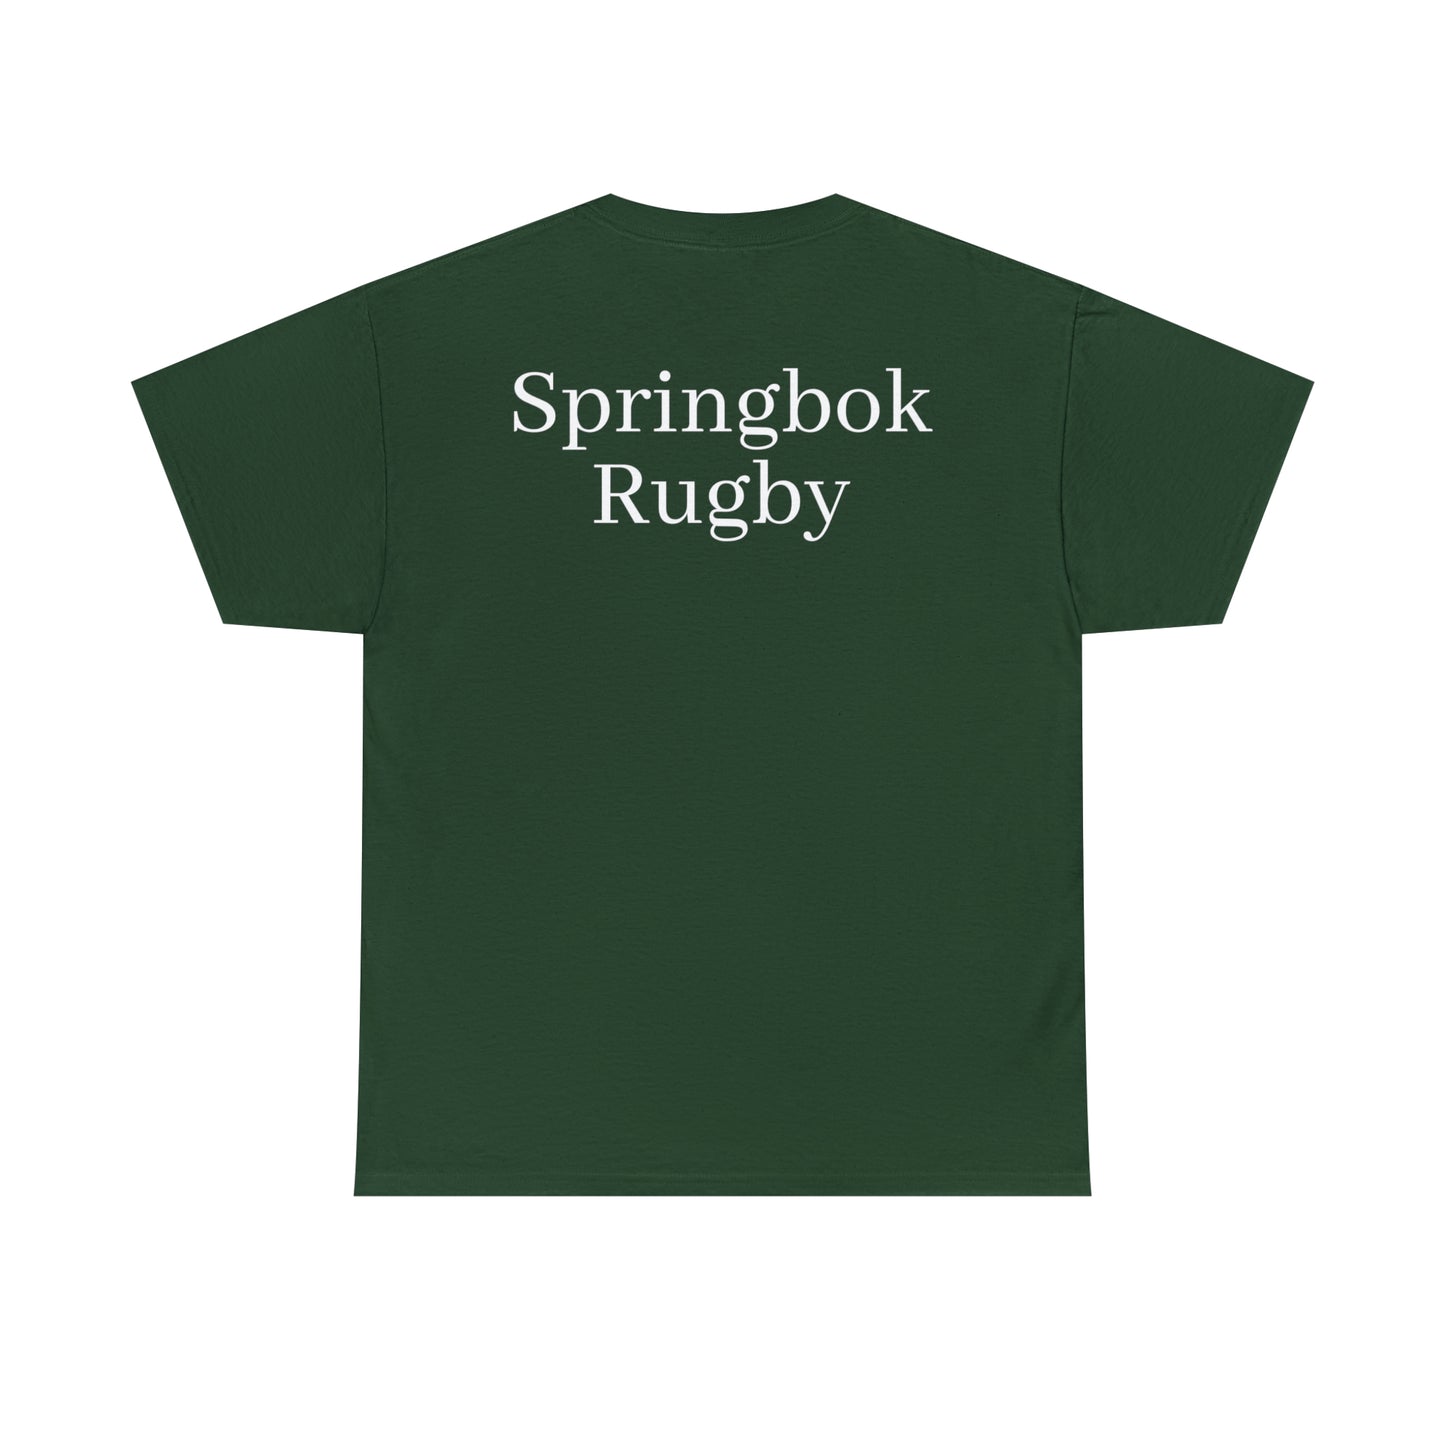 Springboks Team Photo - dark shirts